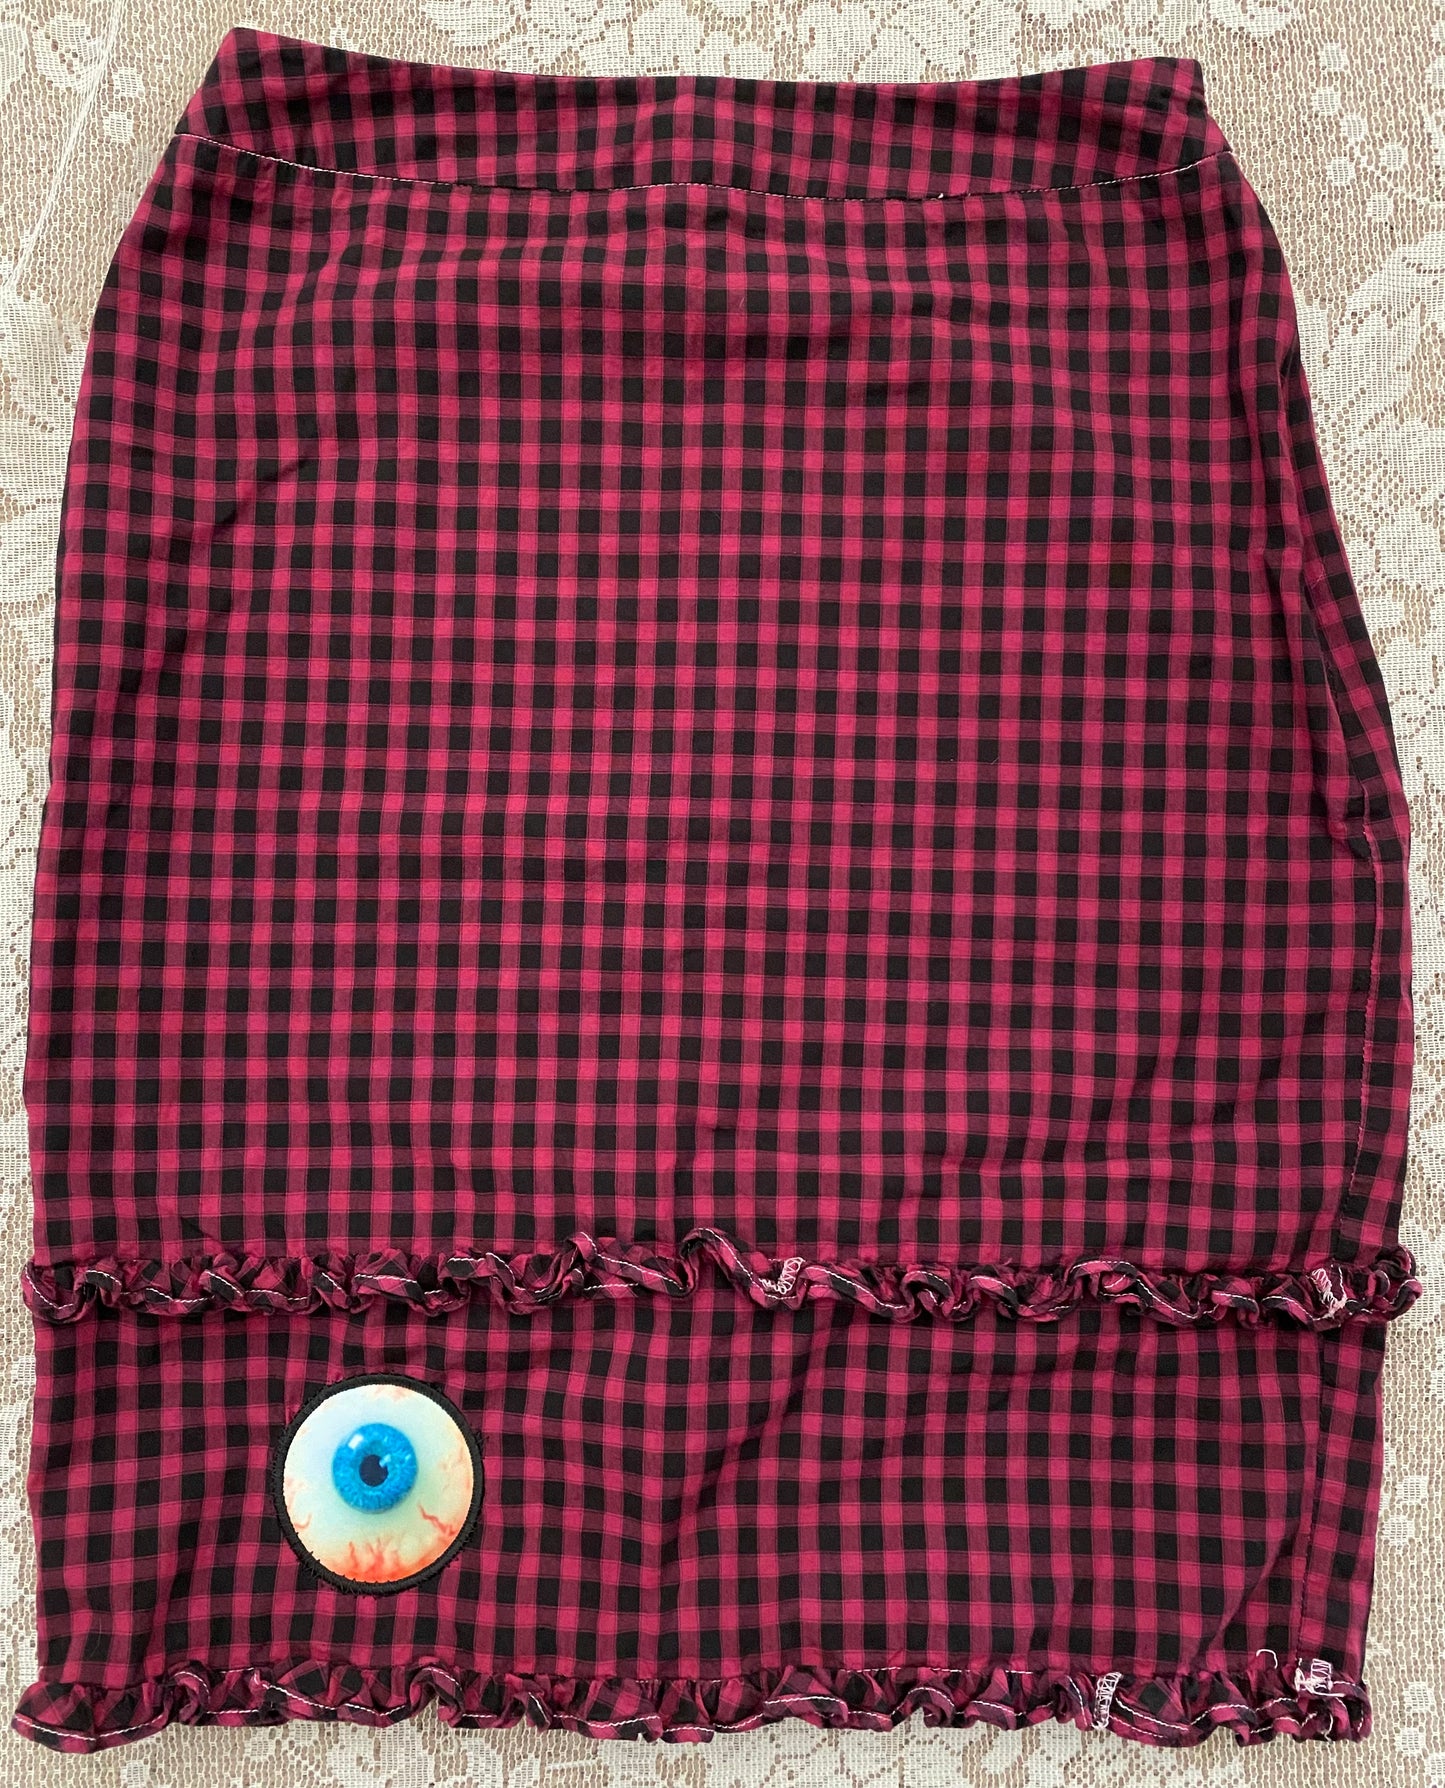 Eyeball skirt